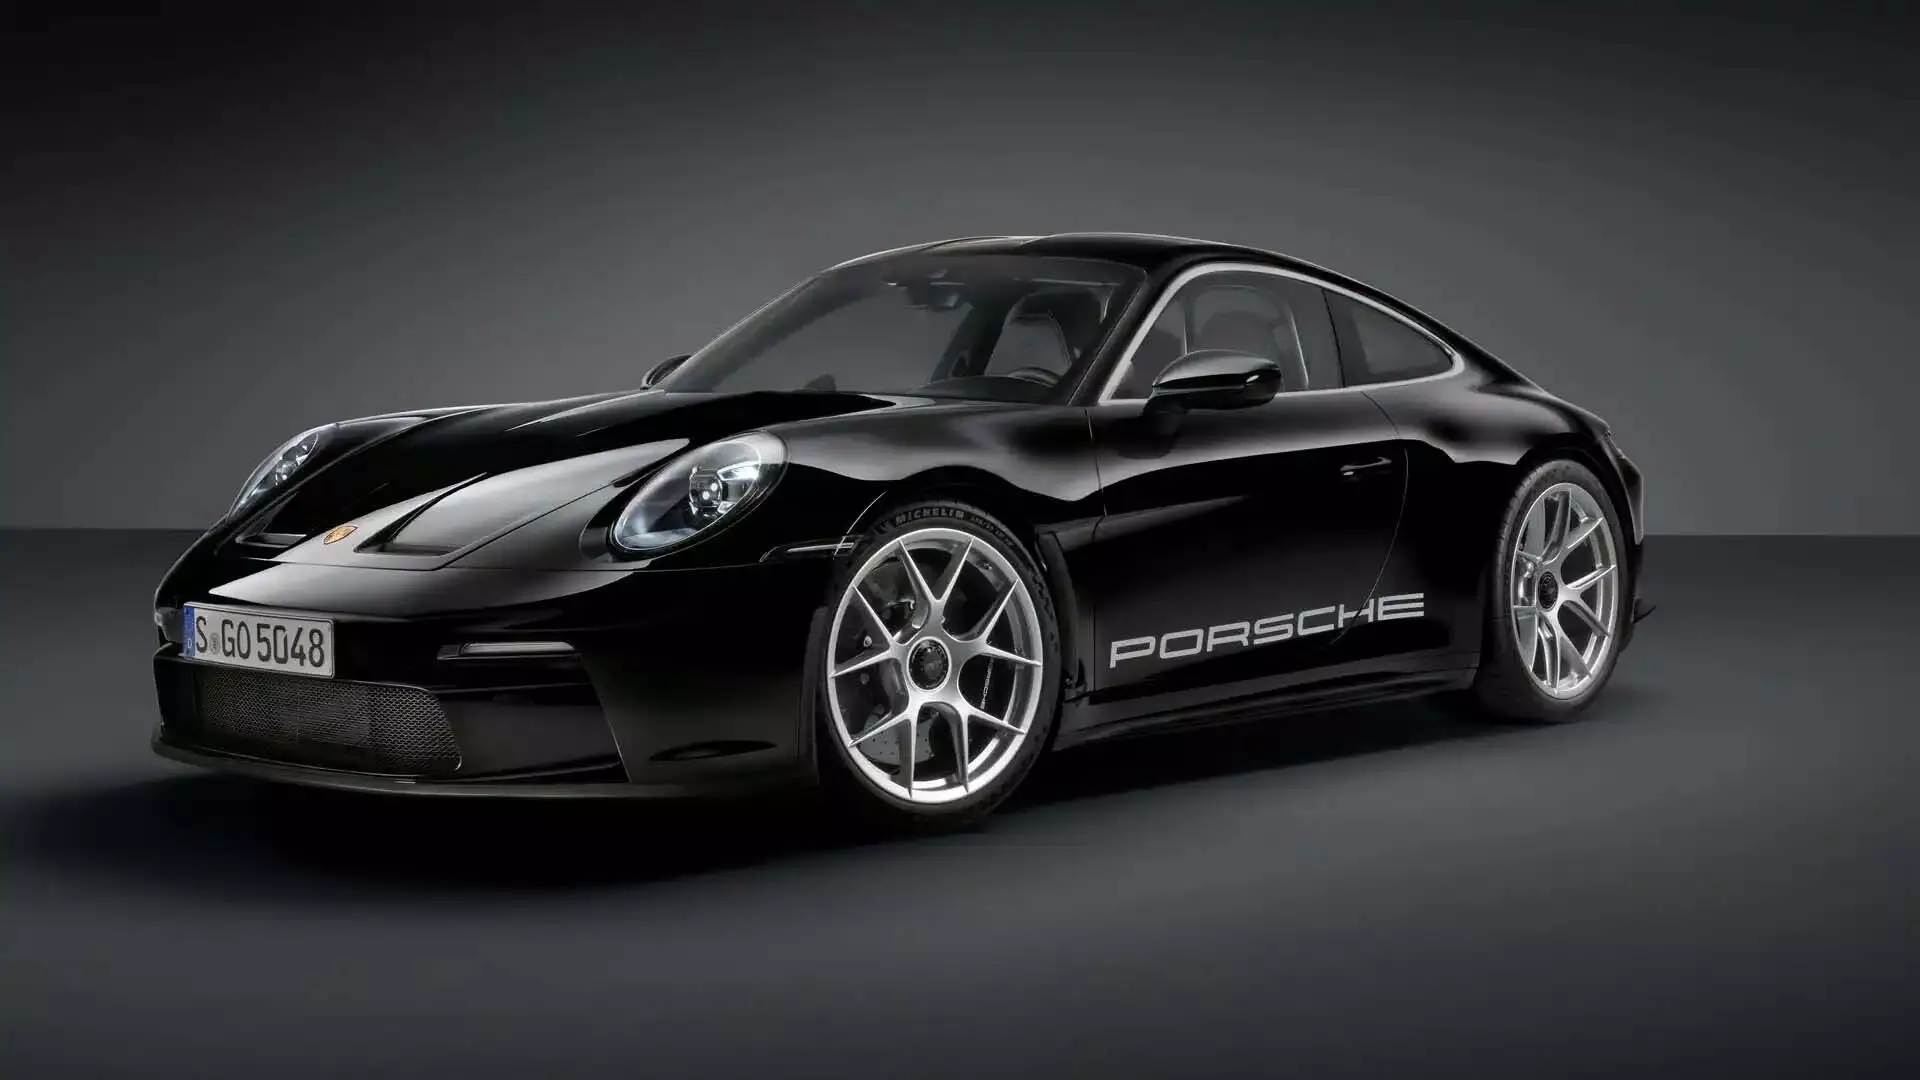 Porsche ने Hybrid तकनीक के साथ पेश की 911, जानें कैसे हैं फीचर्स